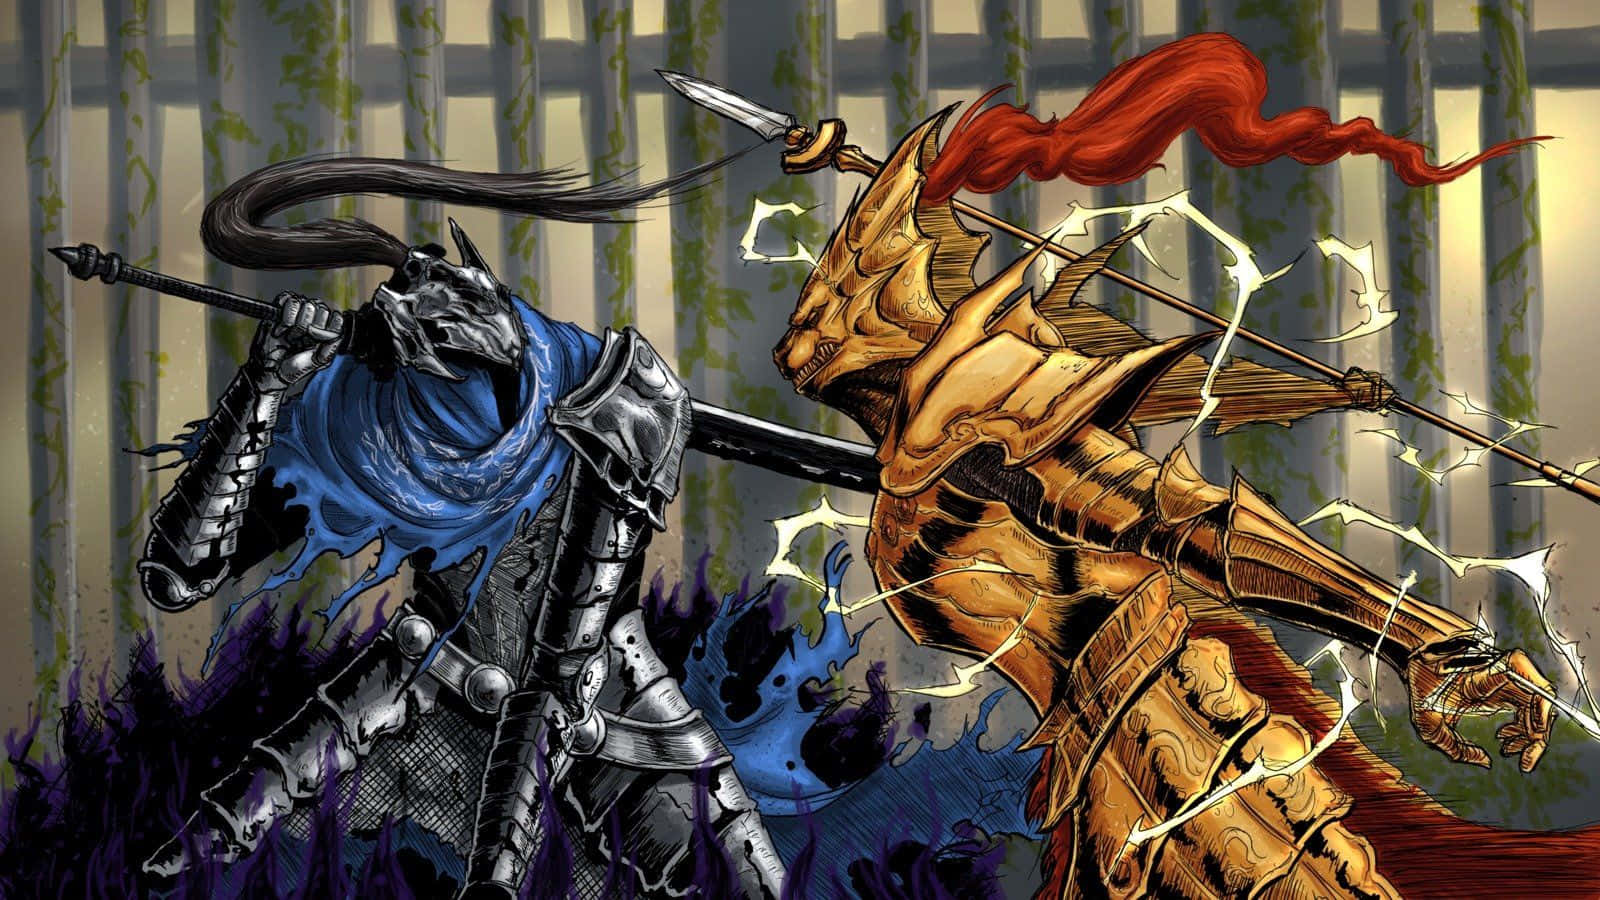 Artorias The Abysswalker in a Dark Souls Battle Scene Wallpaper